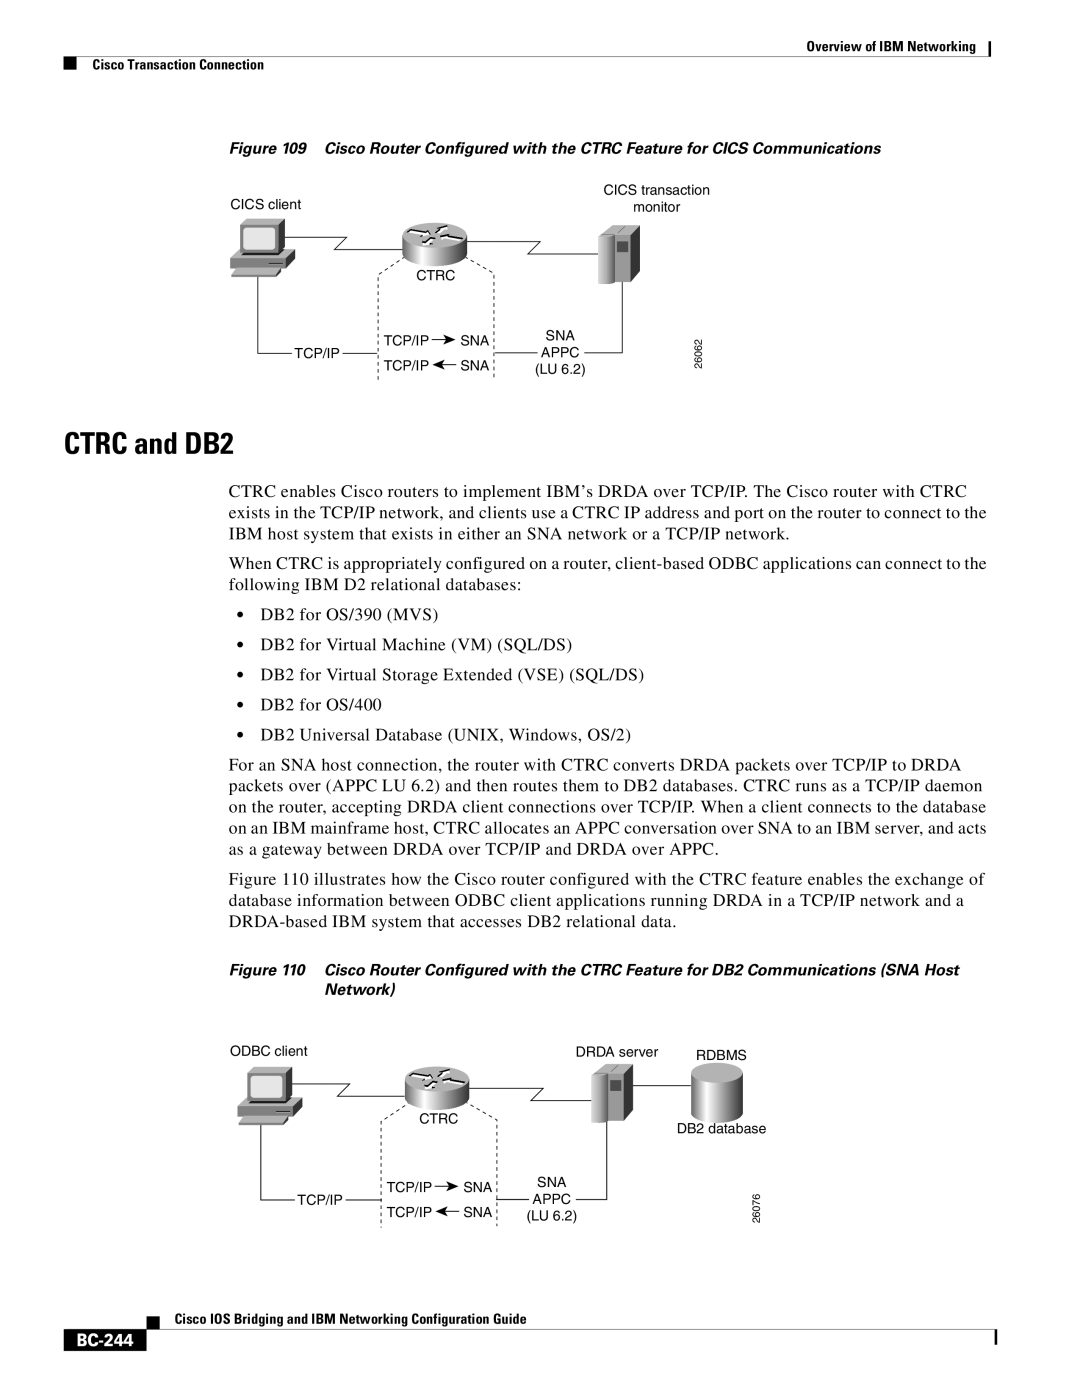 IBM BC-203 manual CTRC and DB2, BC-244 